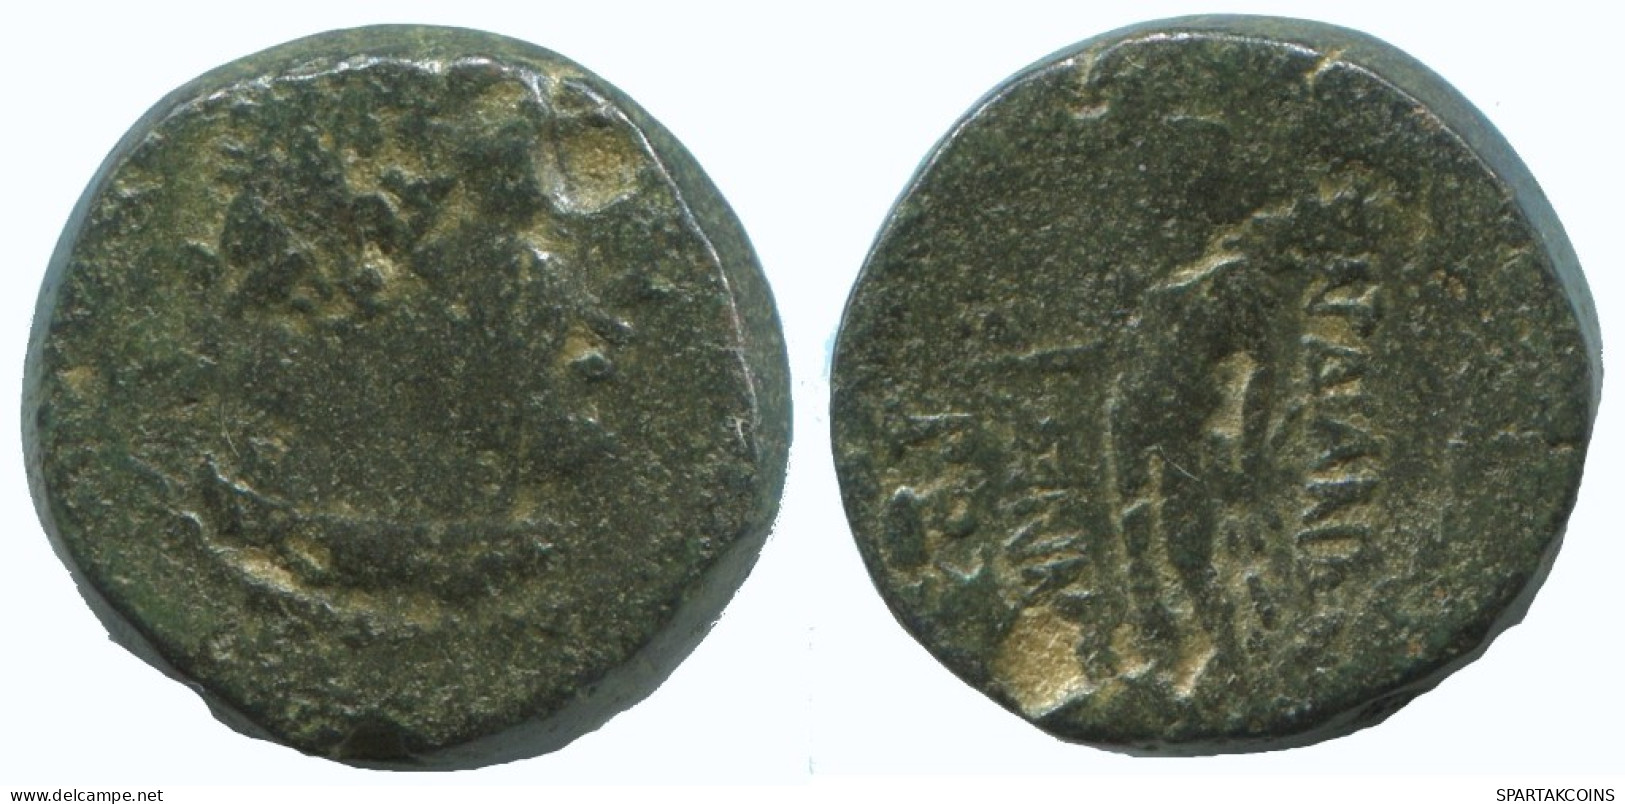 MYSIA PERGAMON HERAKLES ATHENA HELMET GRIEGO ANTIGUO Moneda 5.6g/16mm #AA087.13.E.A - Greek